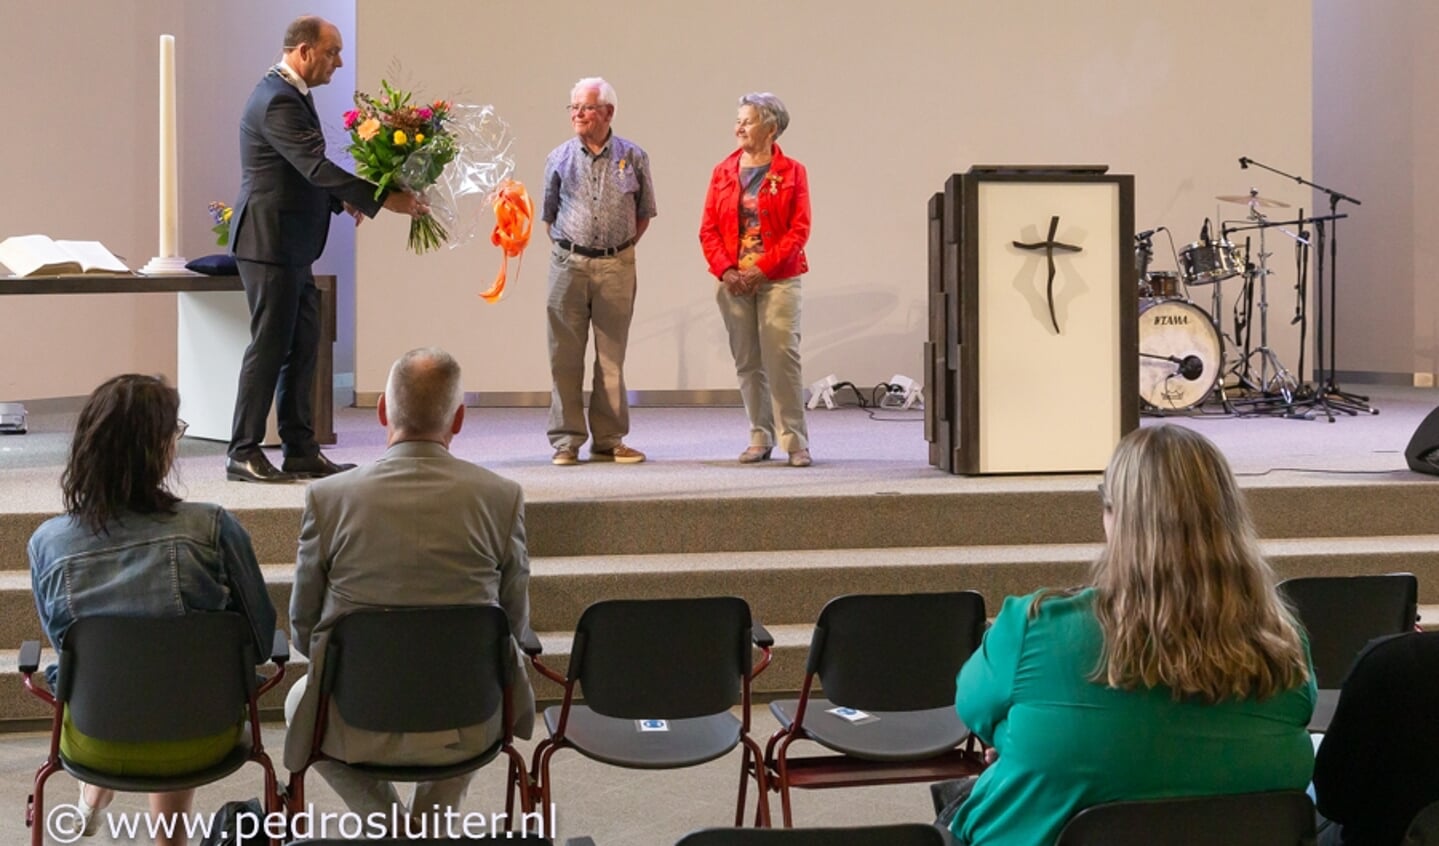 Burgemeester Peter Snijders reikt de koninklijke onderscheiding Lid in de Orde van Oranje-Nassau uit aan het Zwolse echtpaar Wim en Joke Kruitbosch. De heer en mevrouw Kruitbosch worden onderscheiden voor hun ruim 50-jarige vrijwillige verdiensten voor kerk en samenleving.